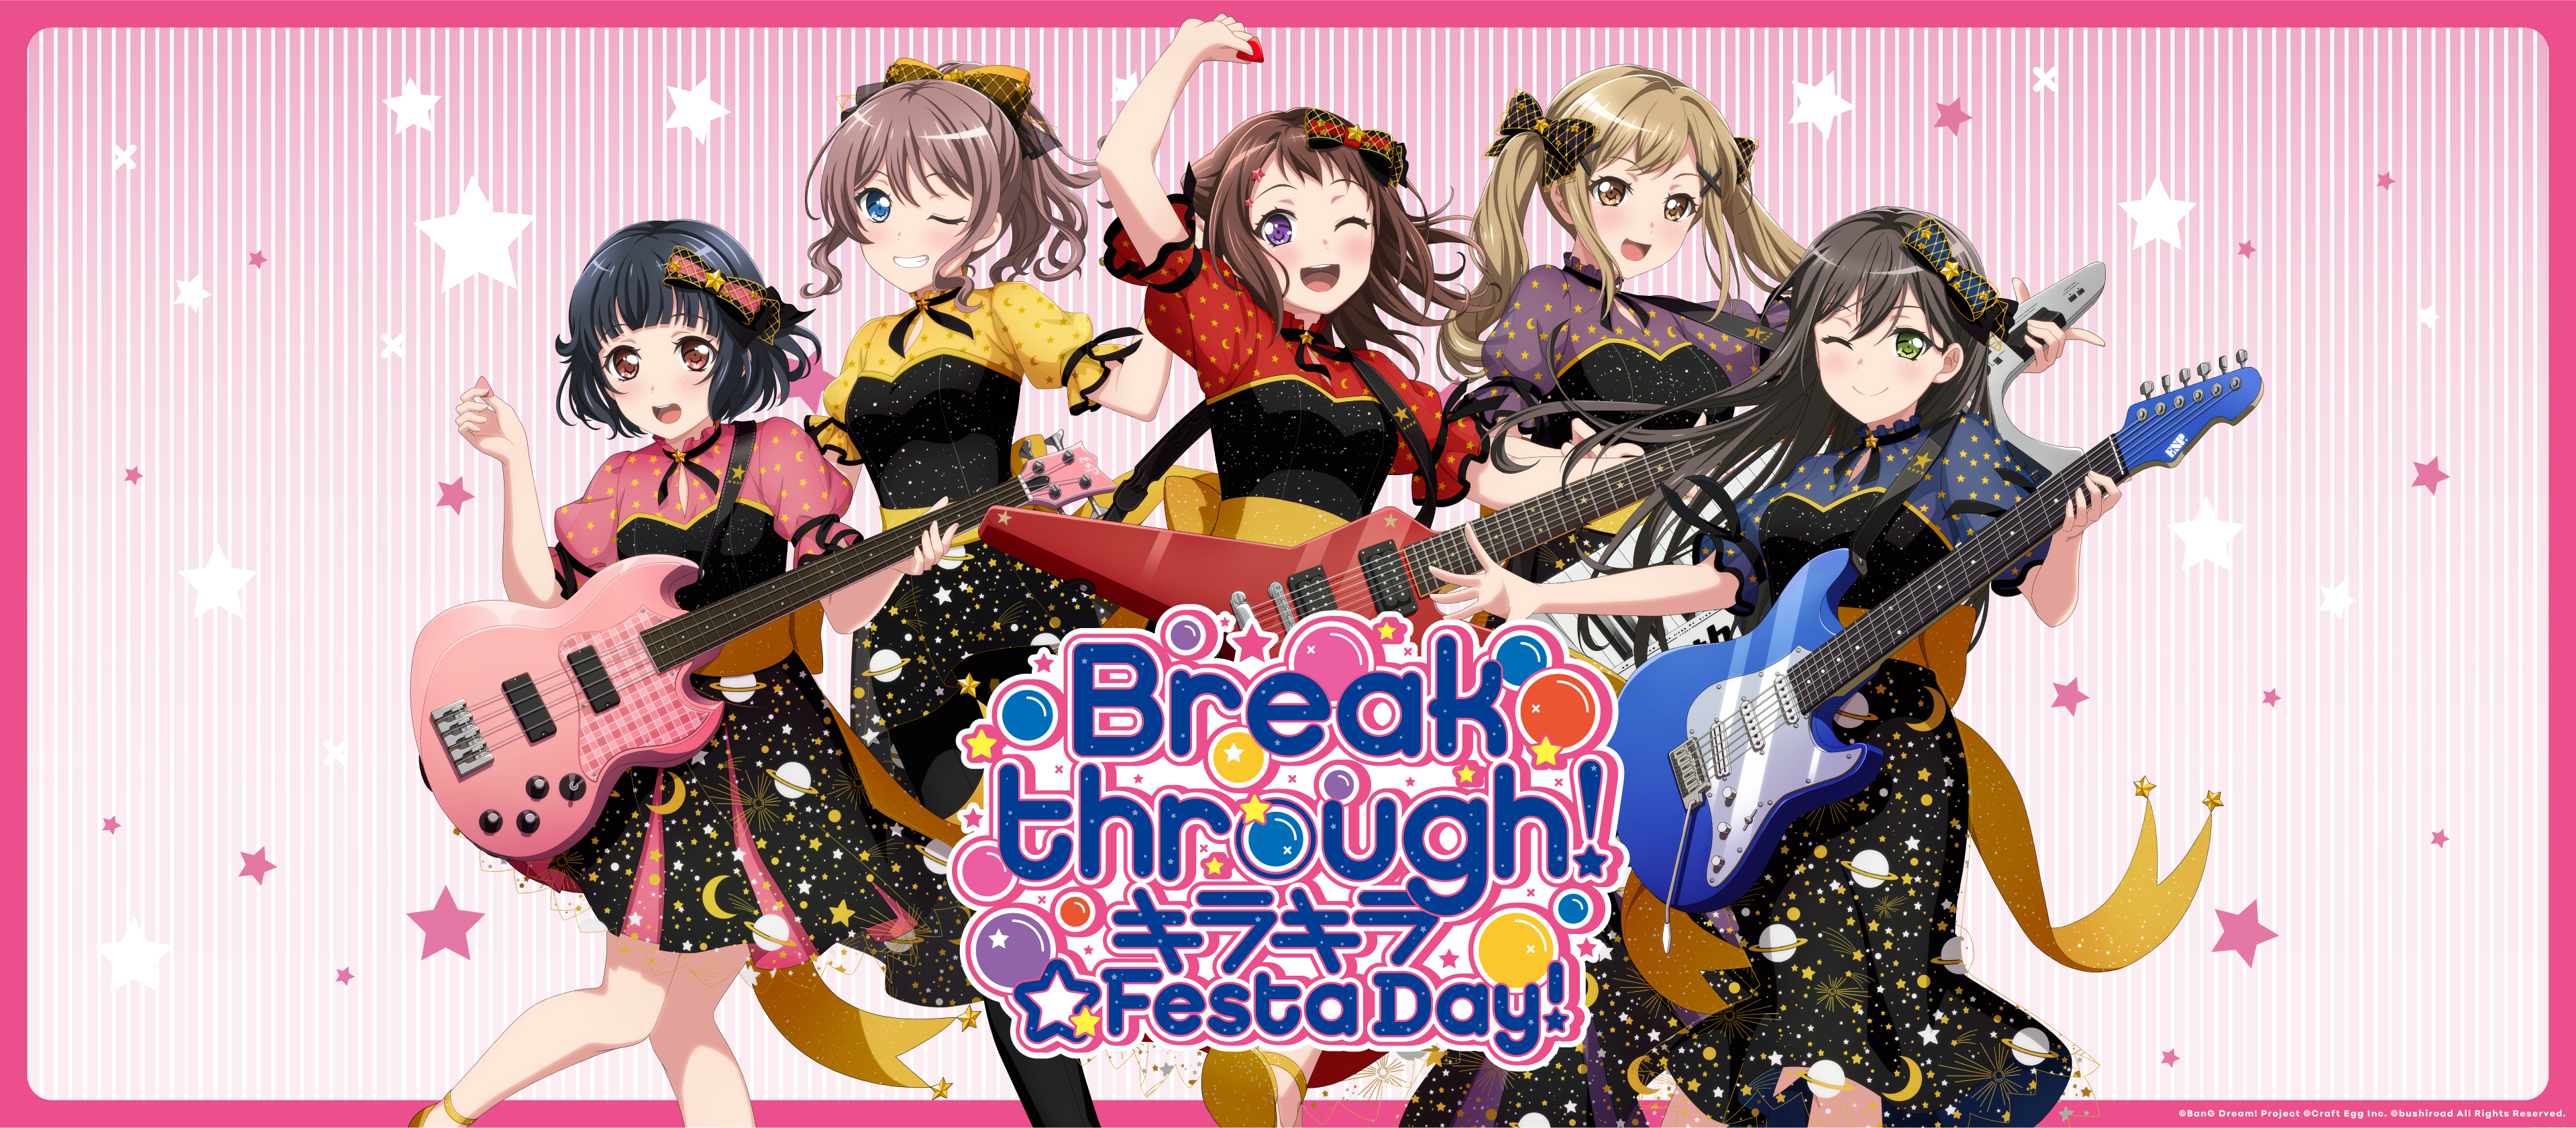 Live "Breakthrough! Kirakira Festa Day" - Poppin'Party